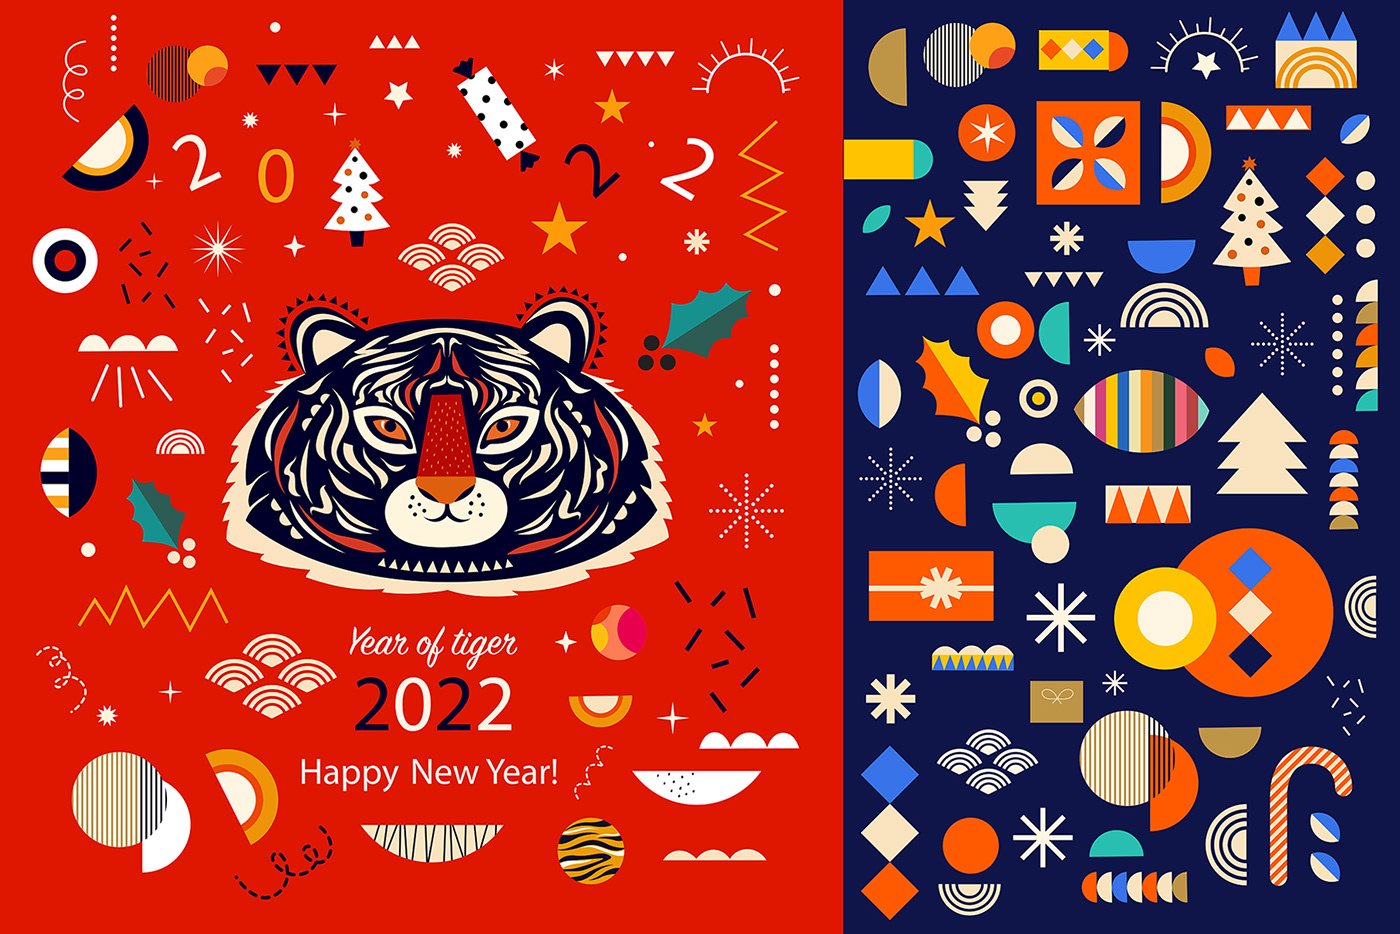 2022 design card Christmas christmas patterns greeting Holiday new year santa tiger xmas